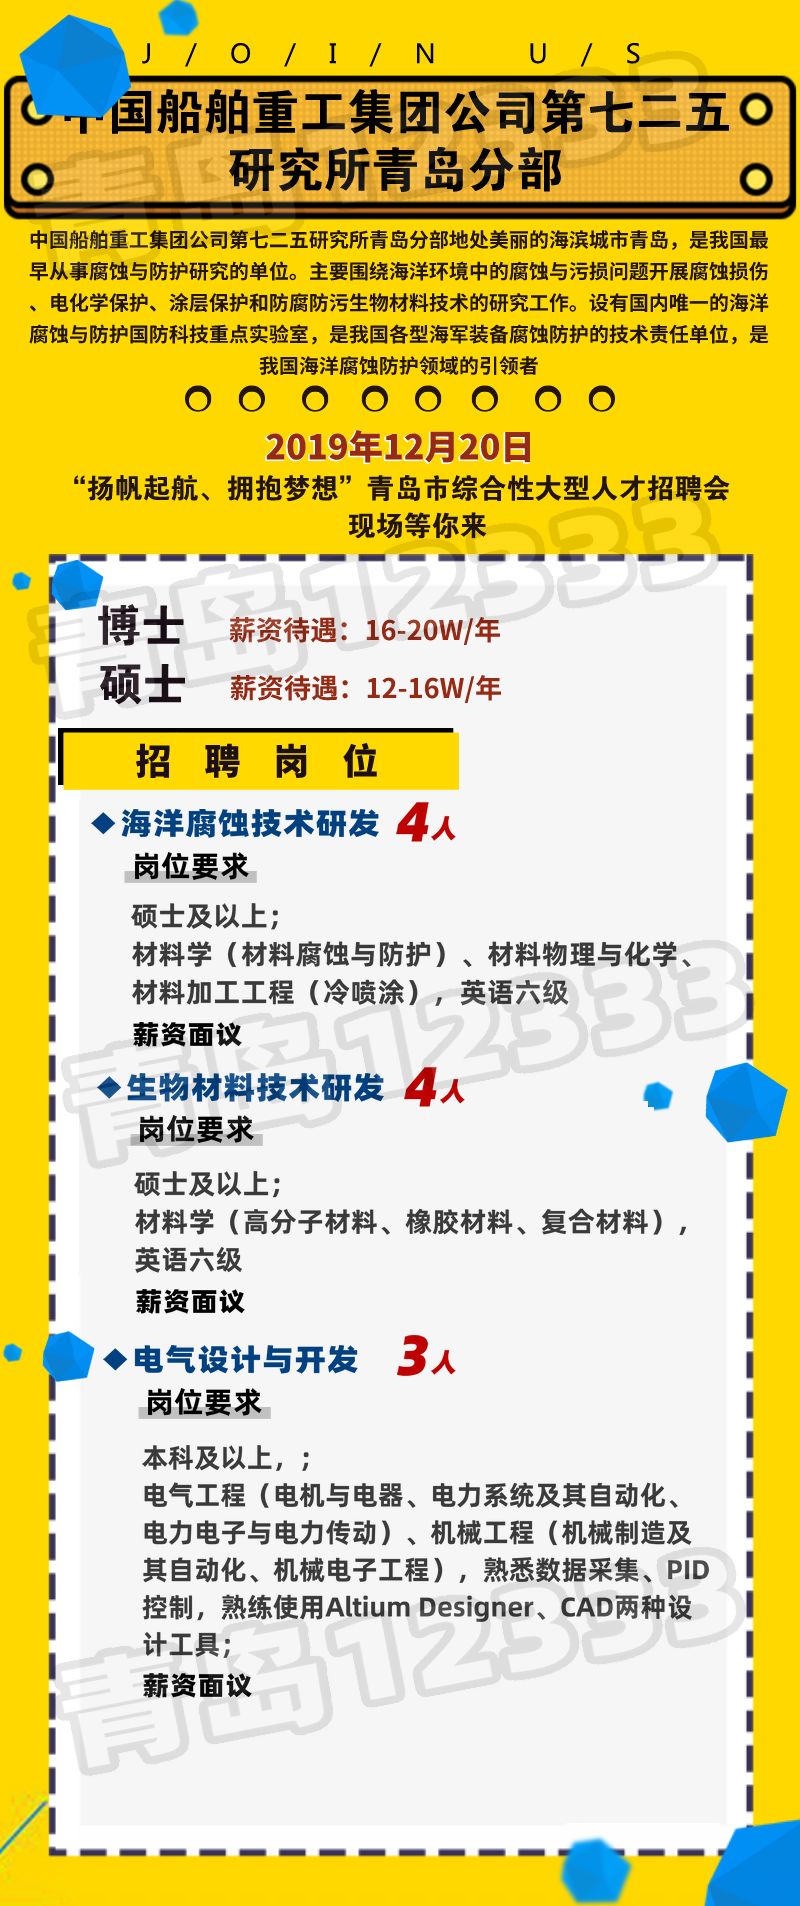 12333招聘_上海公共招聘网手机版下载 12333公共招聘网app下载 v1.2.4 官网安卓版(2)